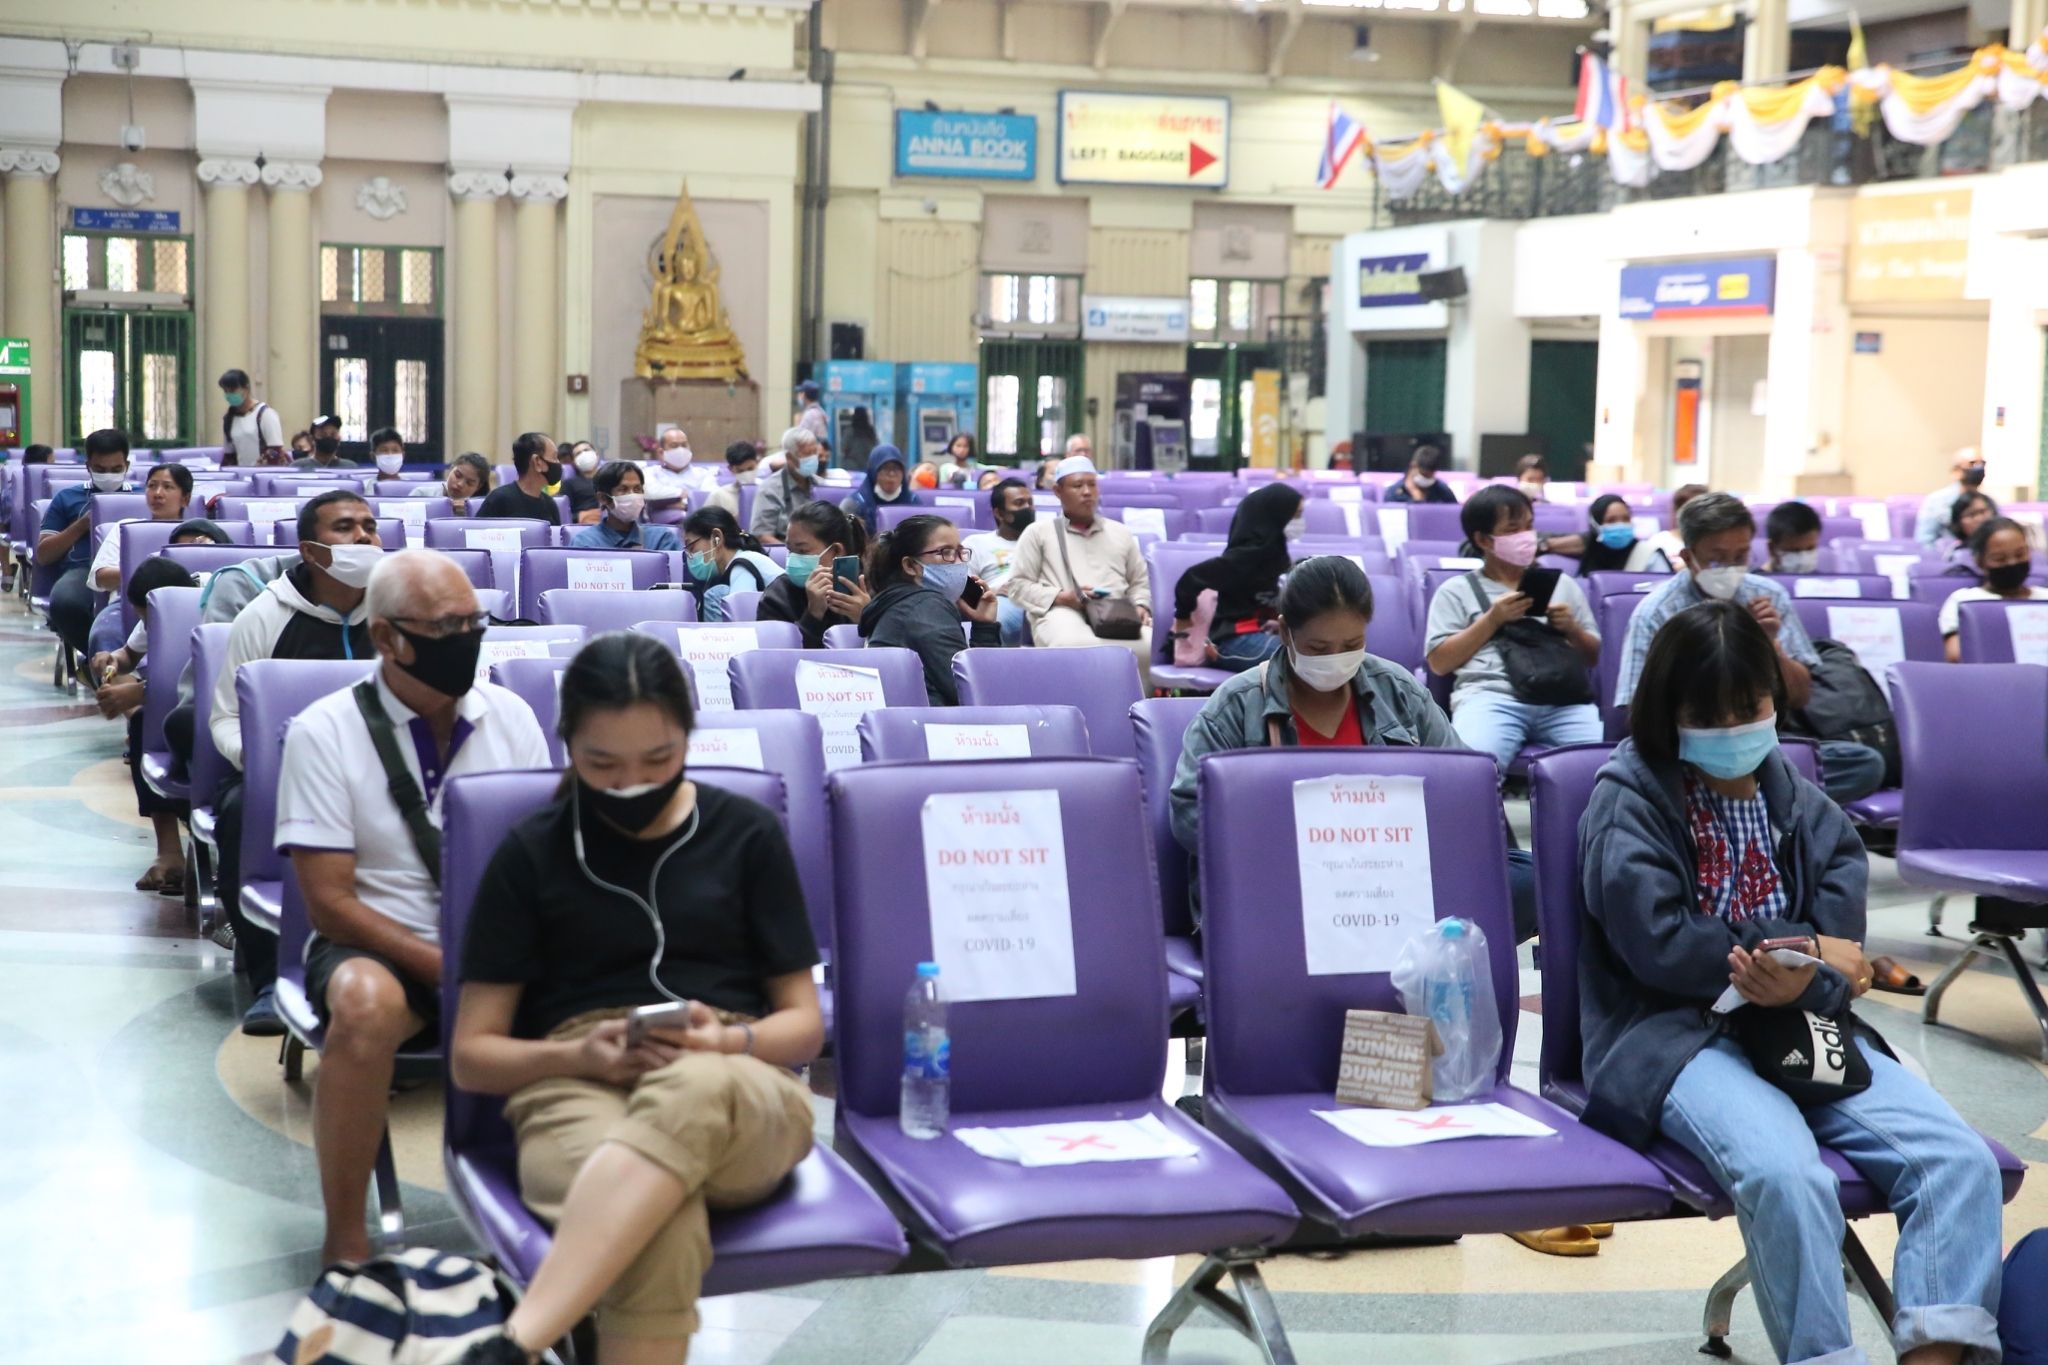 ‘Do not sit,’ read signs enforcing social distancing on chairs at Bangkok’s Hua Lamphong Station. Photo: JS100 Radio
